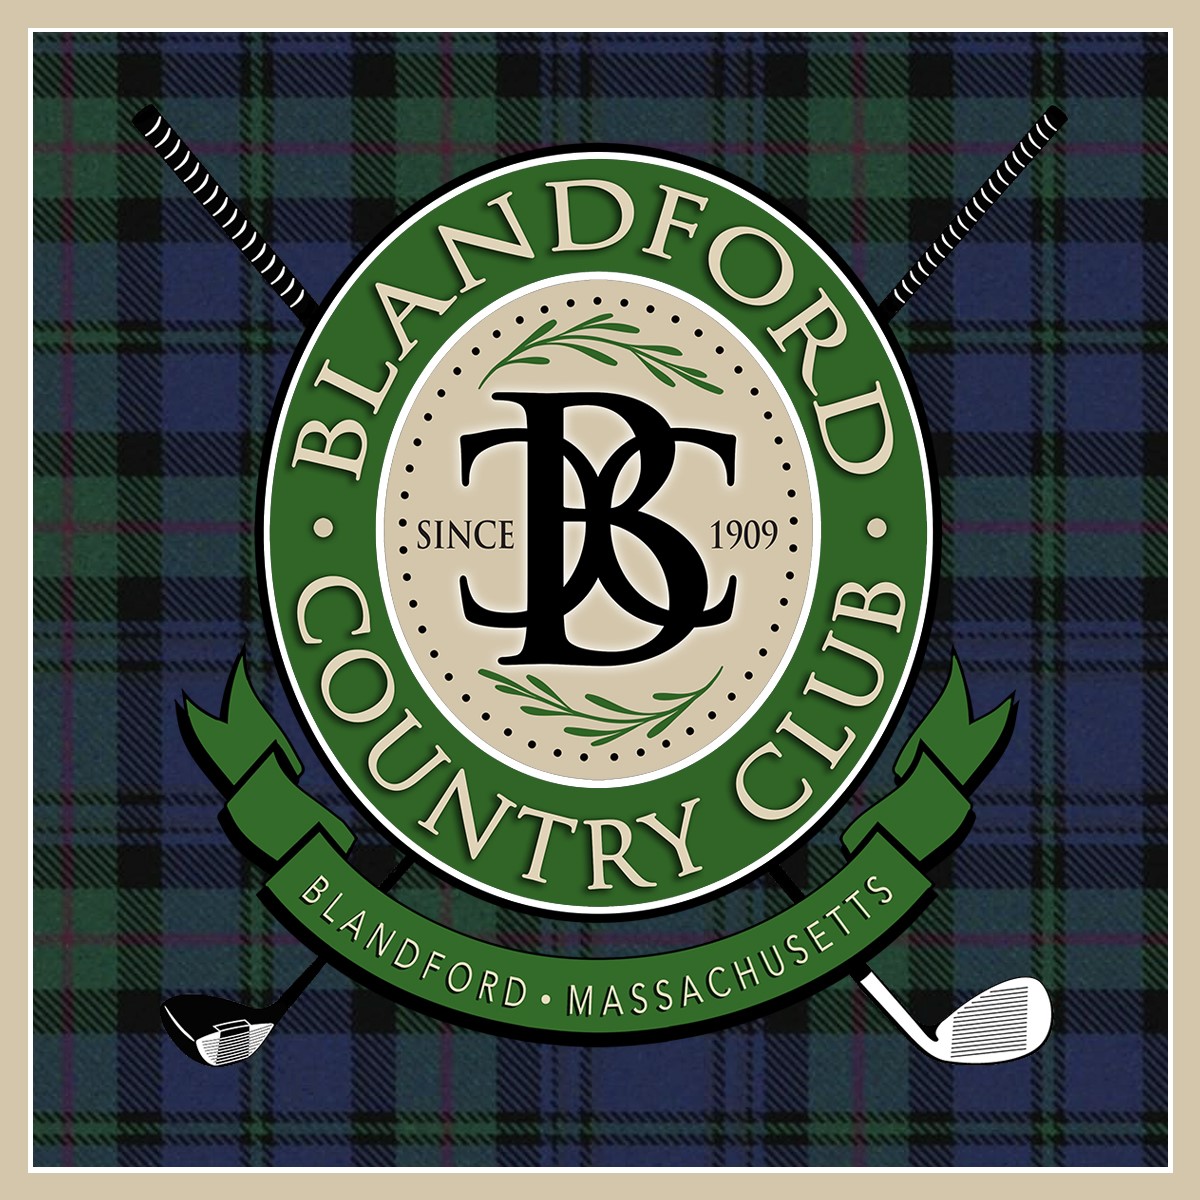 Blandford Country Club